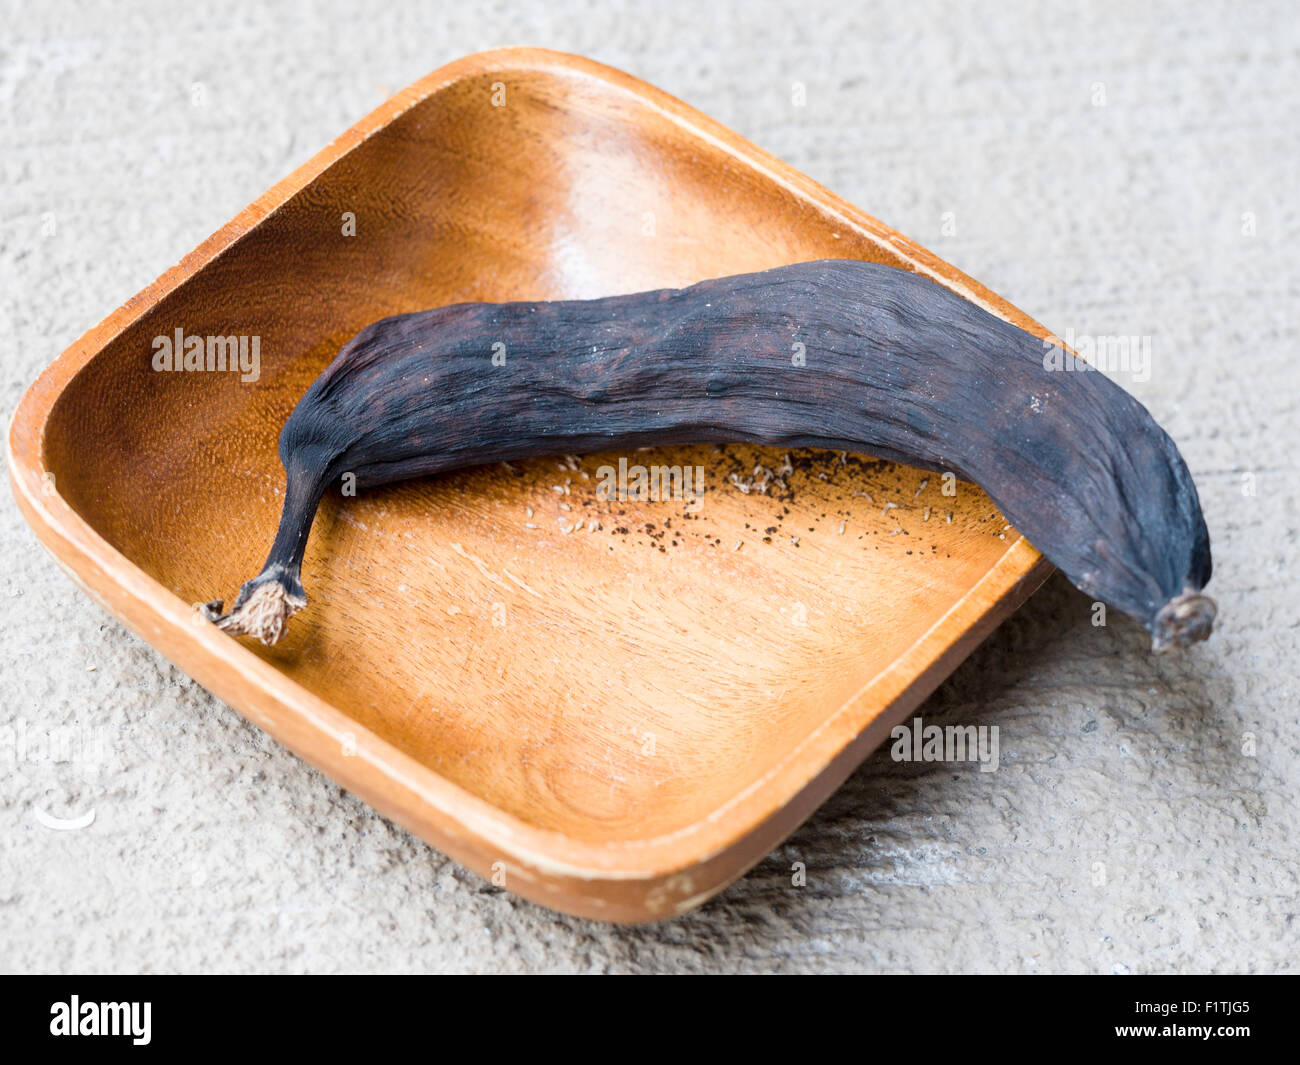 Marciume nero Banana in una ciotola di legno. Una banana lasciata maturare troppo lungo diventa nero, secco e attrae vermi. Foto Stock